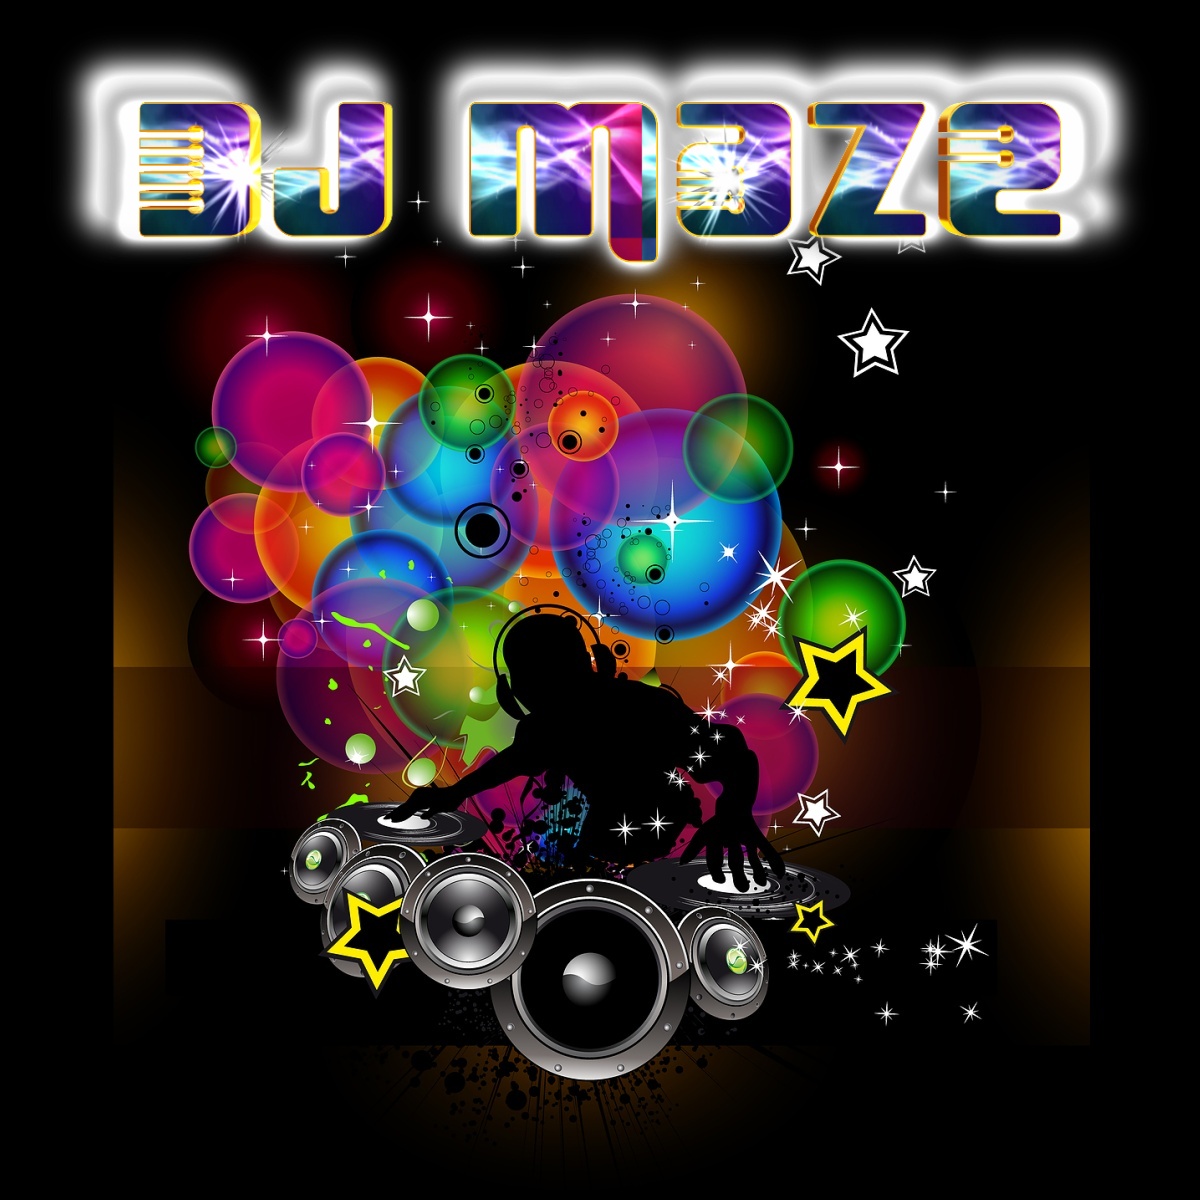 https://blogger.googleusercontent.com/img/b/R29vZ2xl/AVvXsEhap4fTTOkhKDzSD51BNzaDk1erTlFZV89DoFt67OpTdMbm3SxQ07Z8qXX6aa545ChoeDDAylBvTg3QEU7wCNBfuibI4ZHB81IGQwtKtCfpn496BwtyyU8I5Uw3-pla-SZbWB0wXukC1w/s1600/Maze+Rainbow+Balloons-Large.jpg